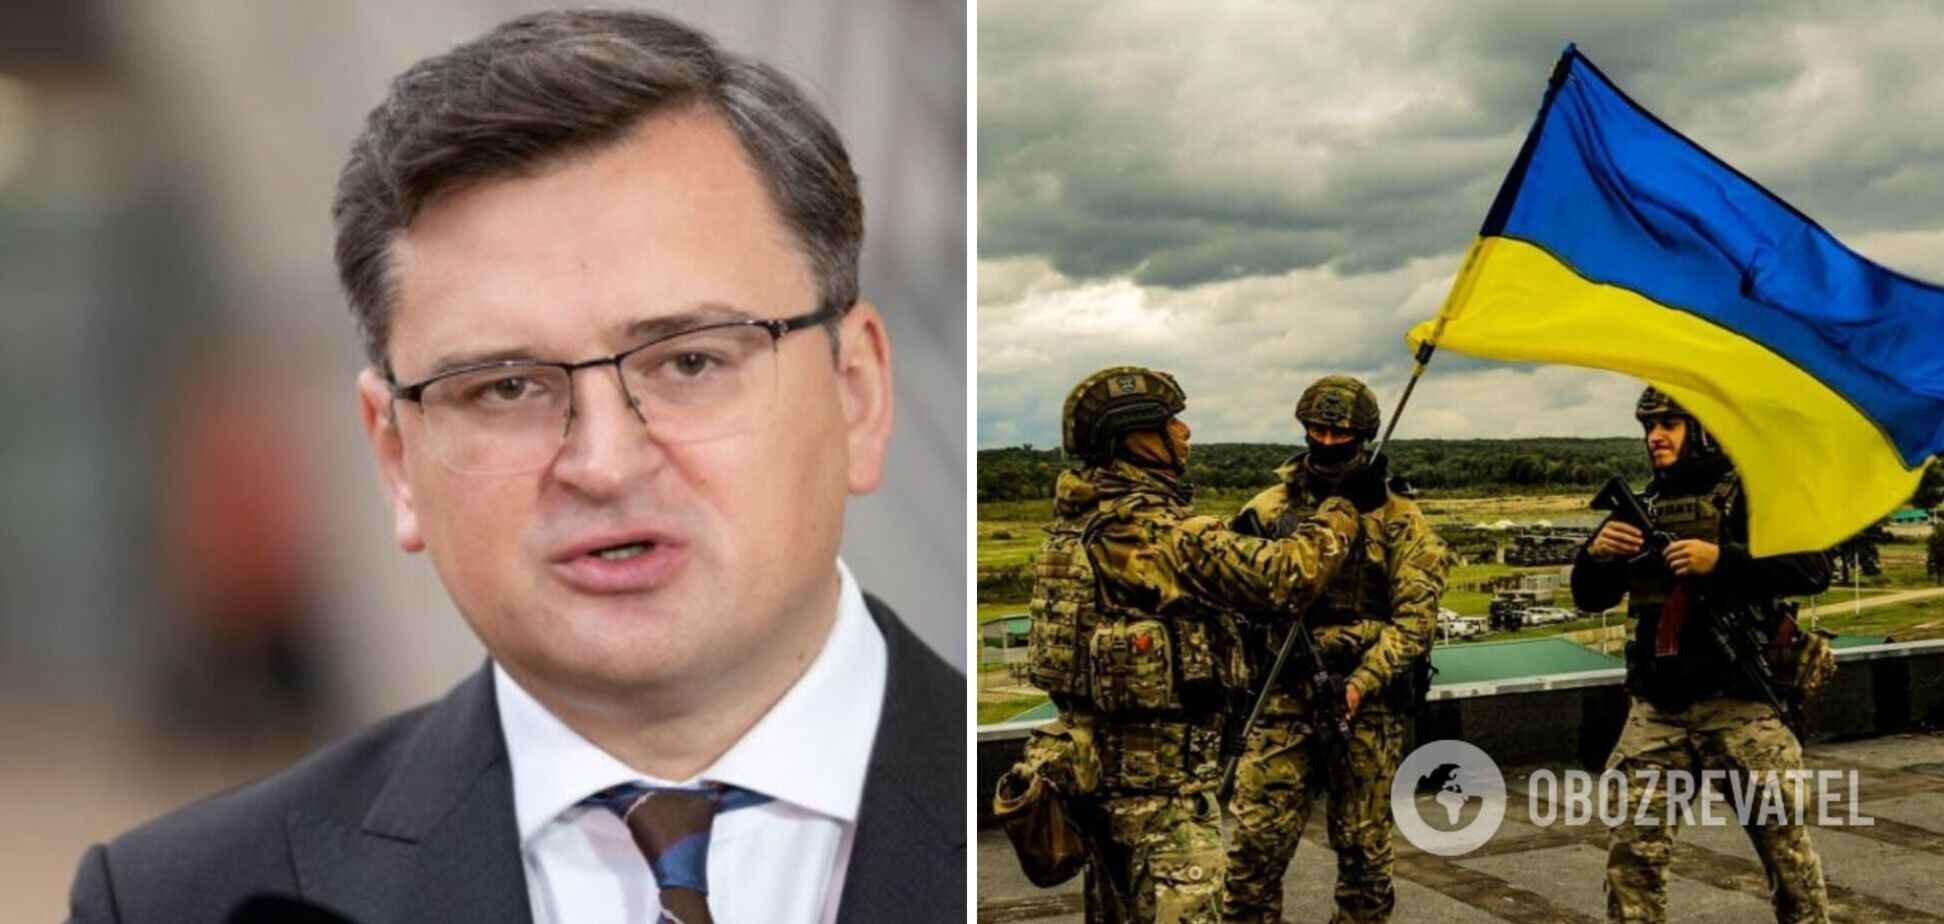 Перемога України у війні з Росією є досяжною, партнери мають не сумніватися у цьому, а допомагати, – Кулеба